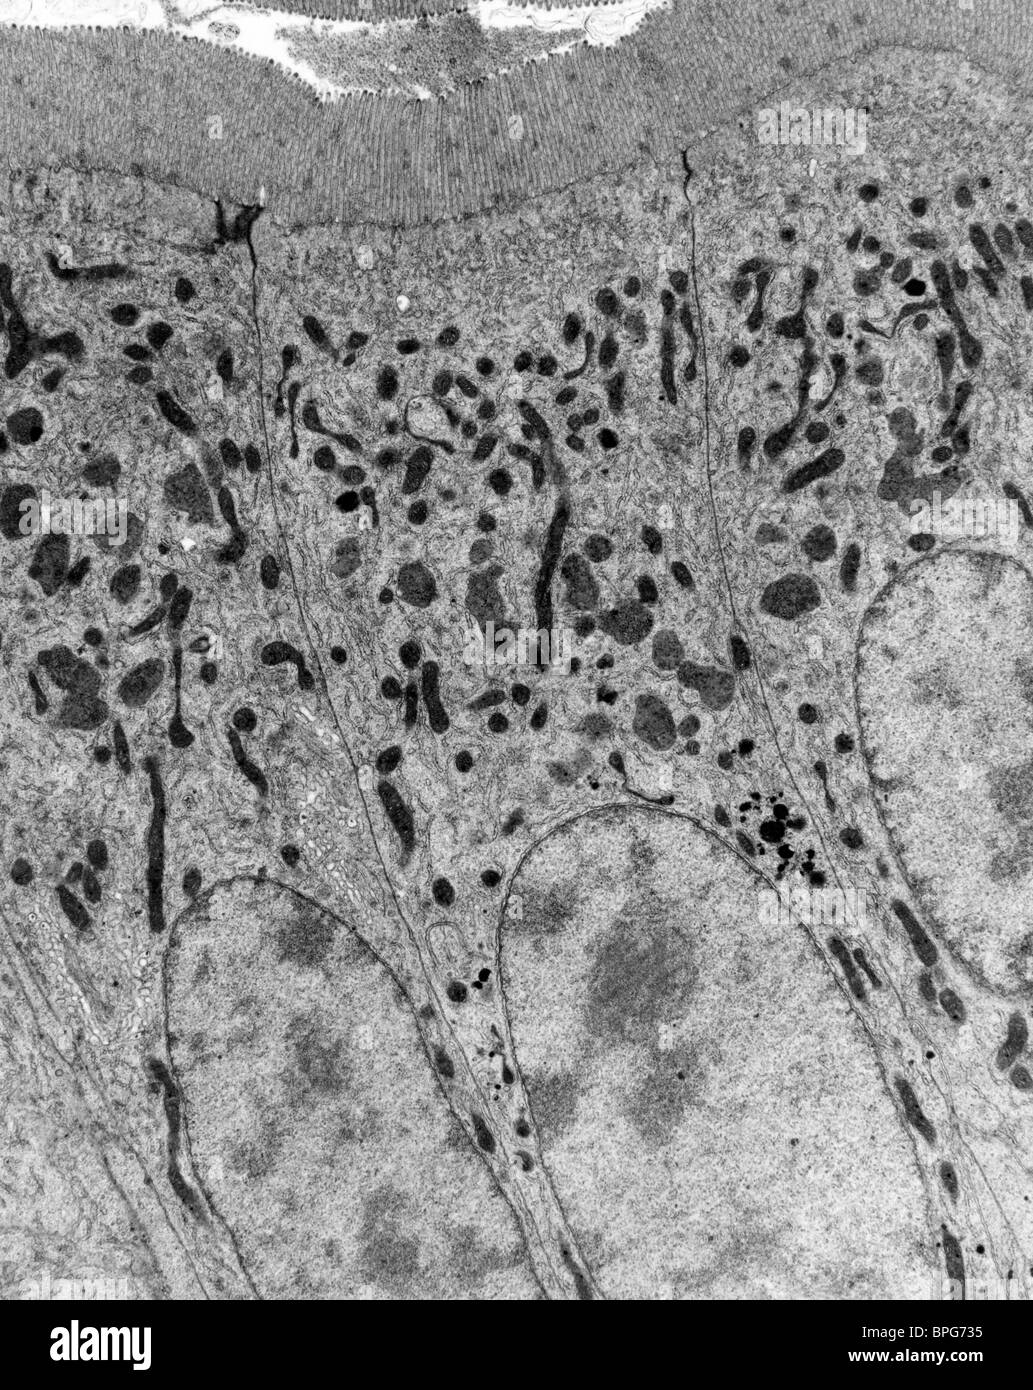 Una micrografia elettronica a trasmissione di una sezione del piccolo intestino che mostra microvilli, membrana plasmatica, mitochrondia e nuclei. Foto Stock